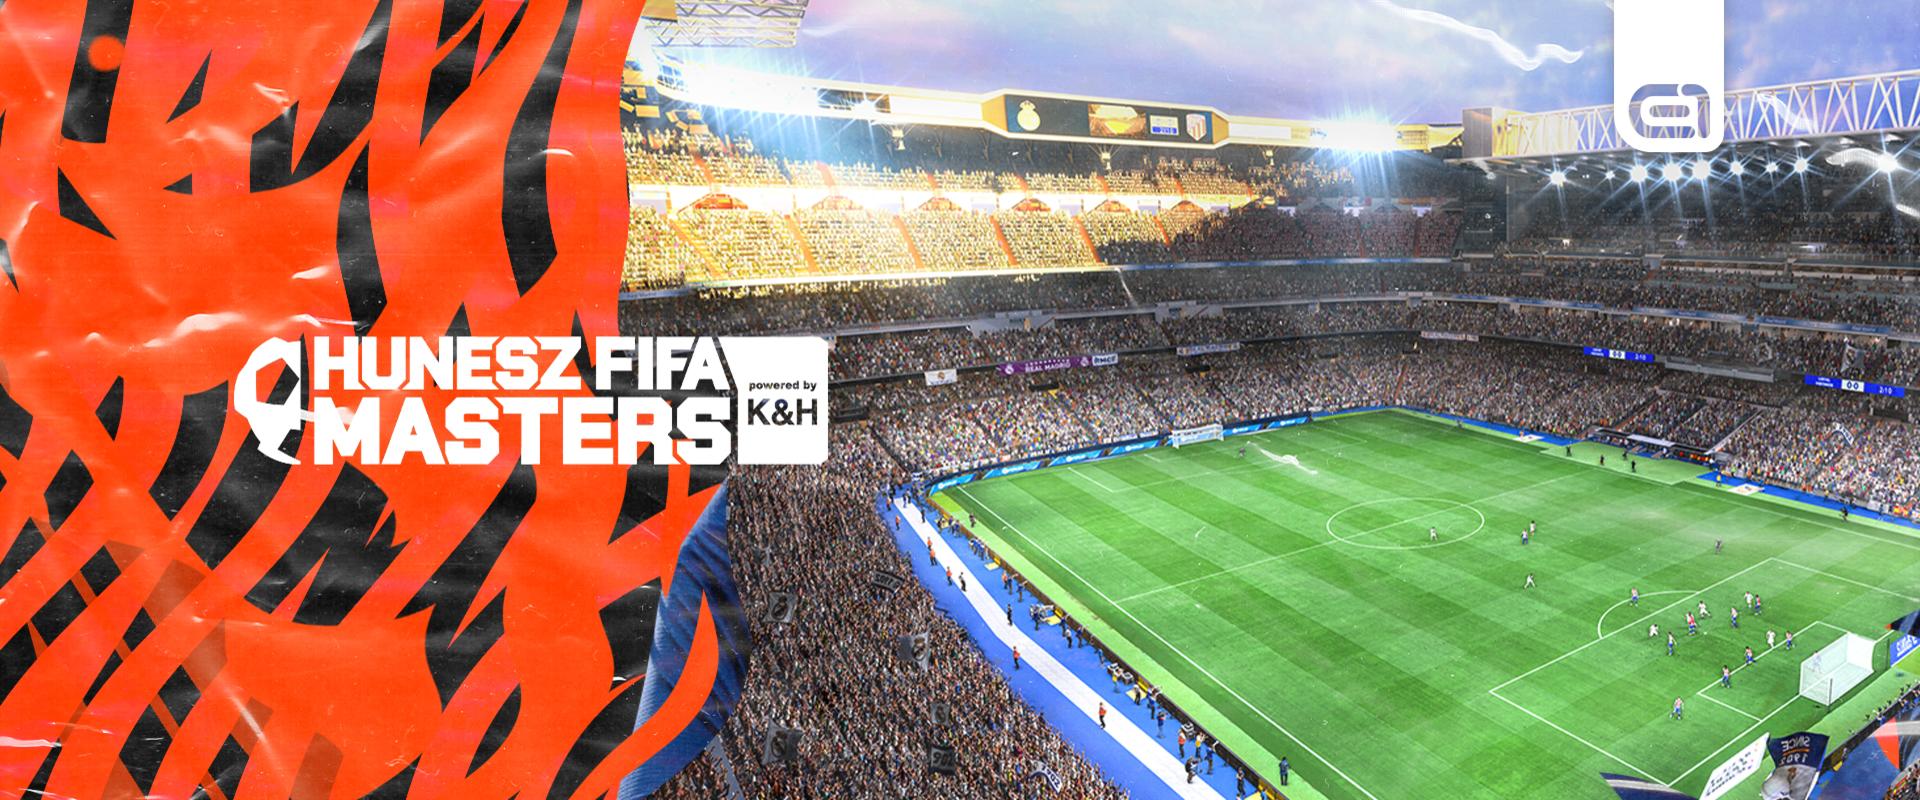 A hajrájához érkezett a HUNESZ FIFA Masters powered by K&H májusi alapszakasza